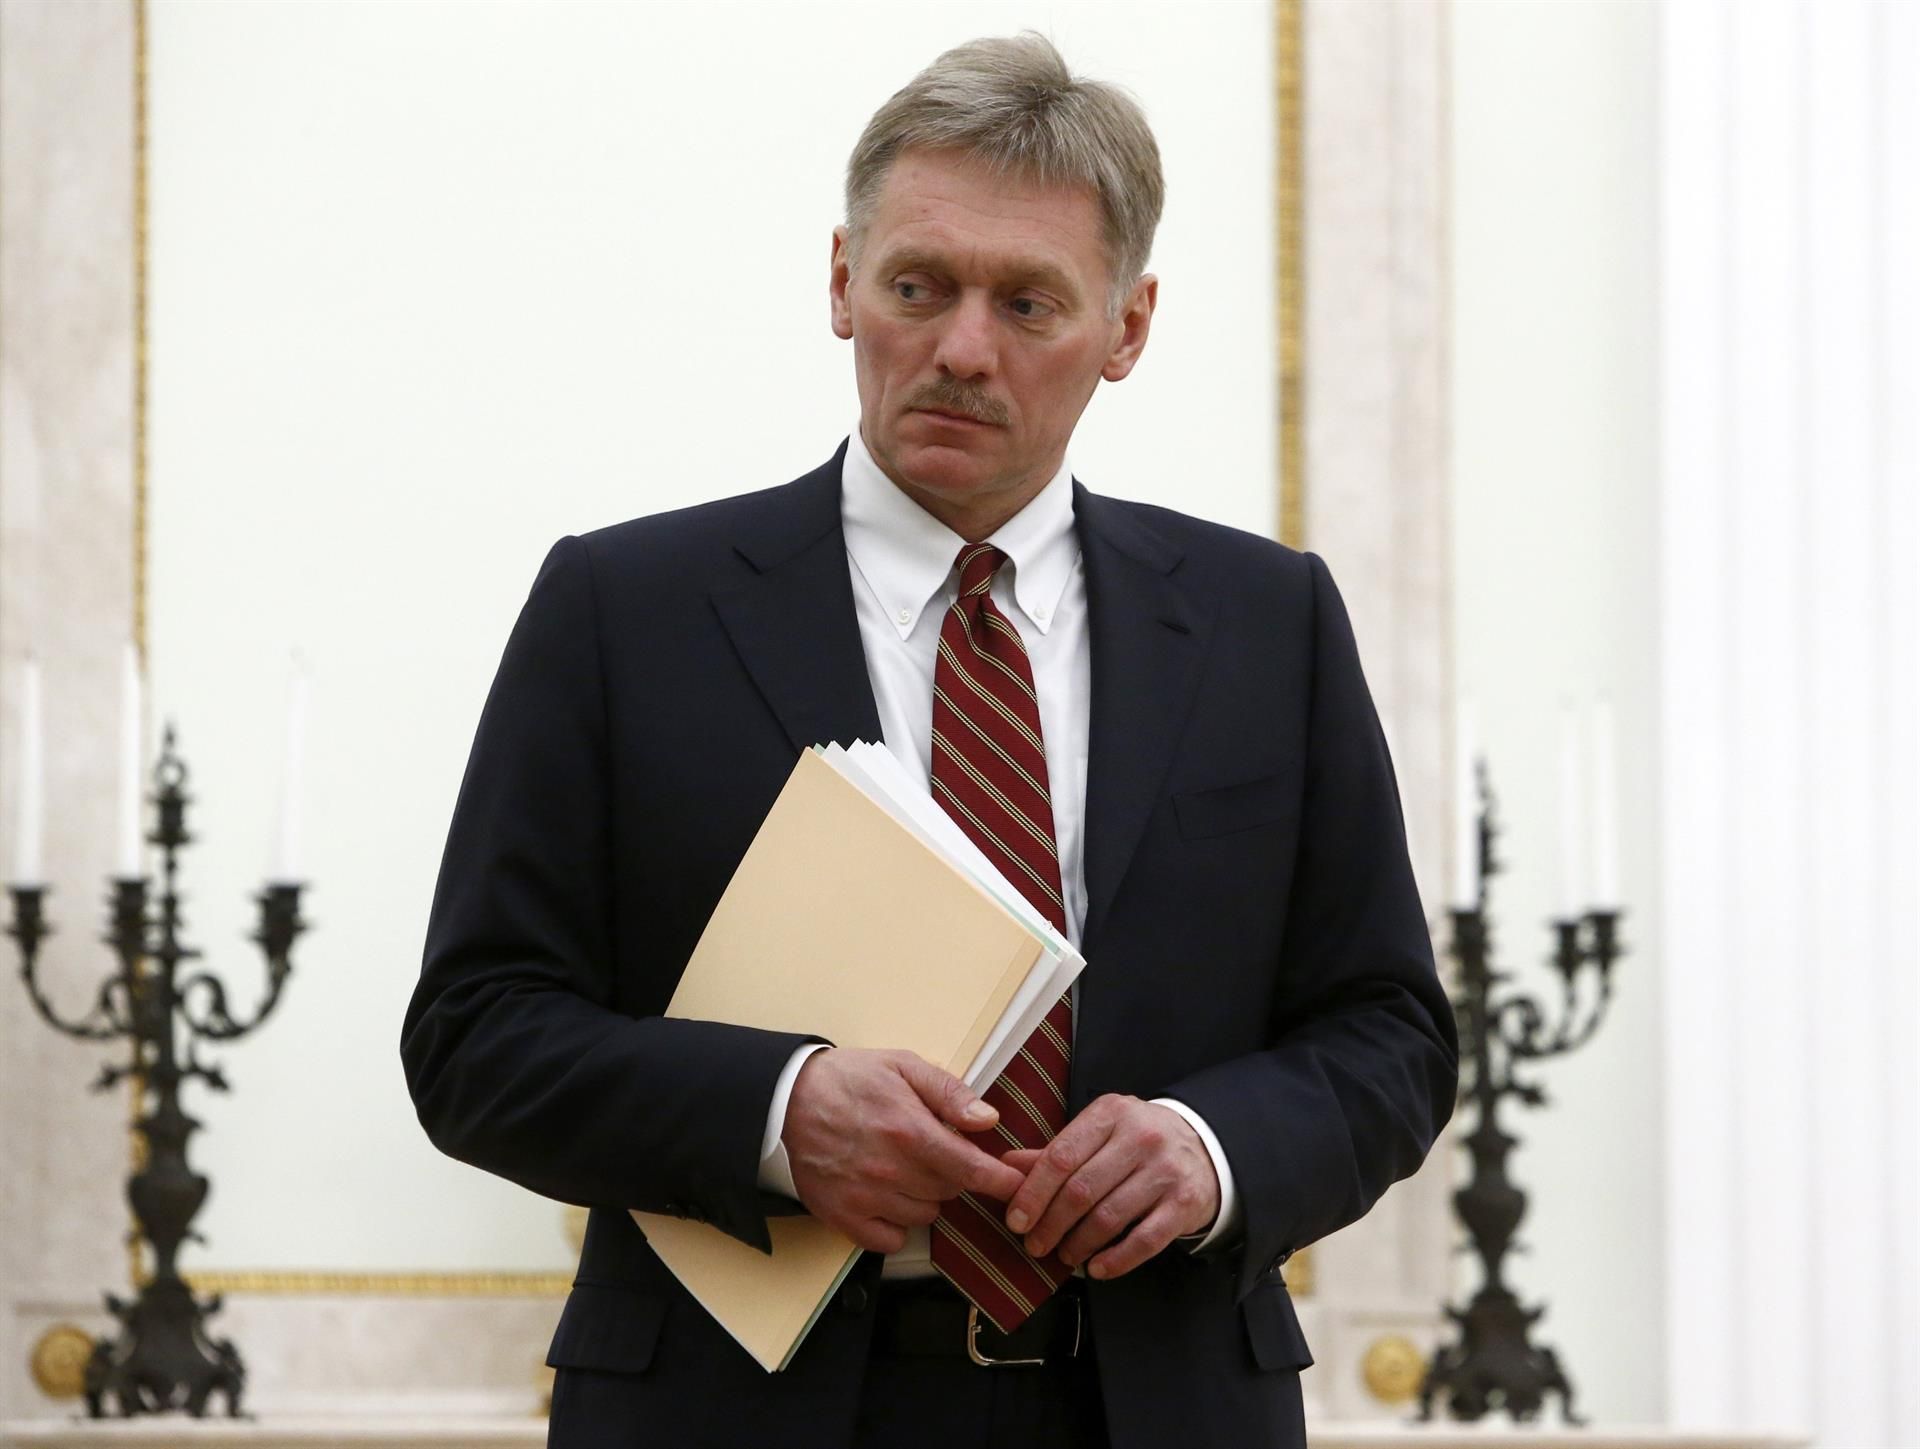 El portavoz de la Presidencia rusa, Dmitri Peskov, en una imagen de archivo. EPA/SERGEI KARPUKHIN / POOL